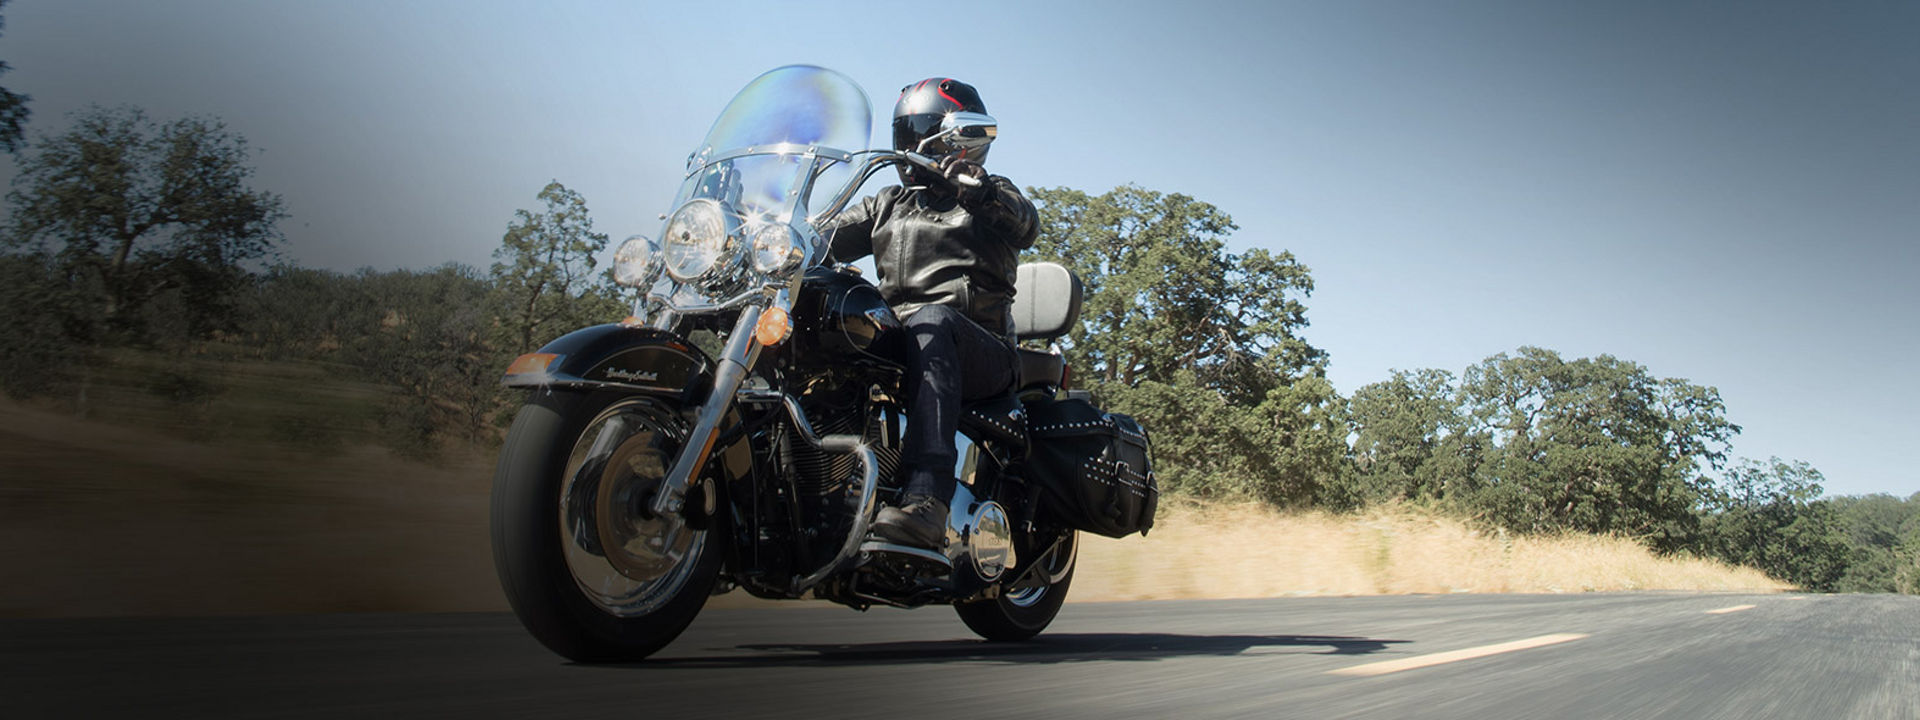 Esta imagen muestra a un motociclista conduciendo con neumáticos de motocicleta Bridgestone personalizados.